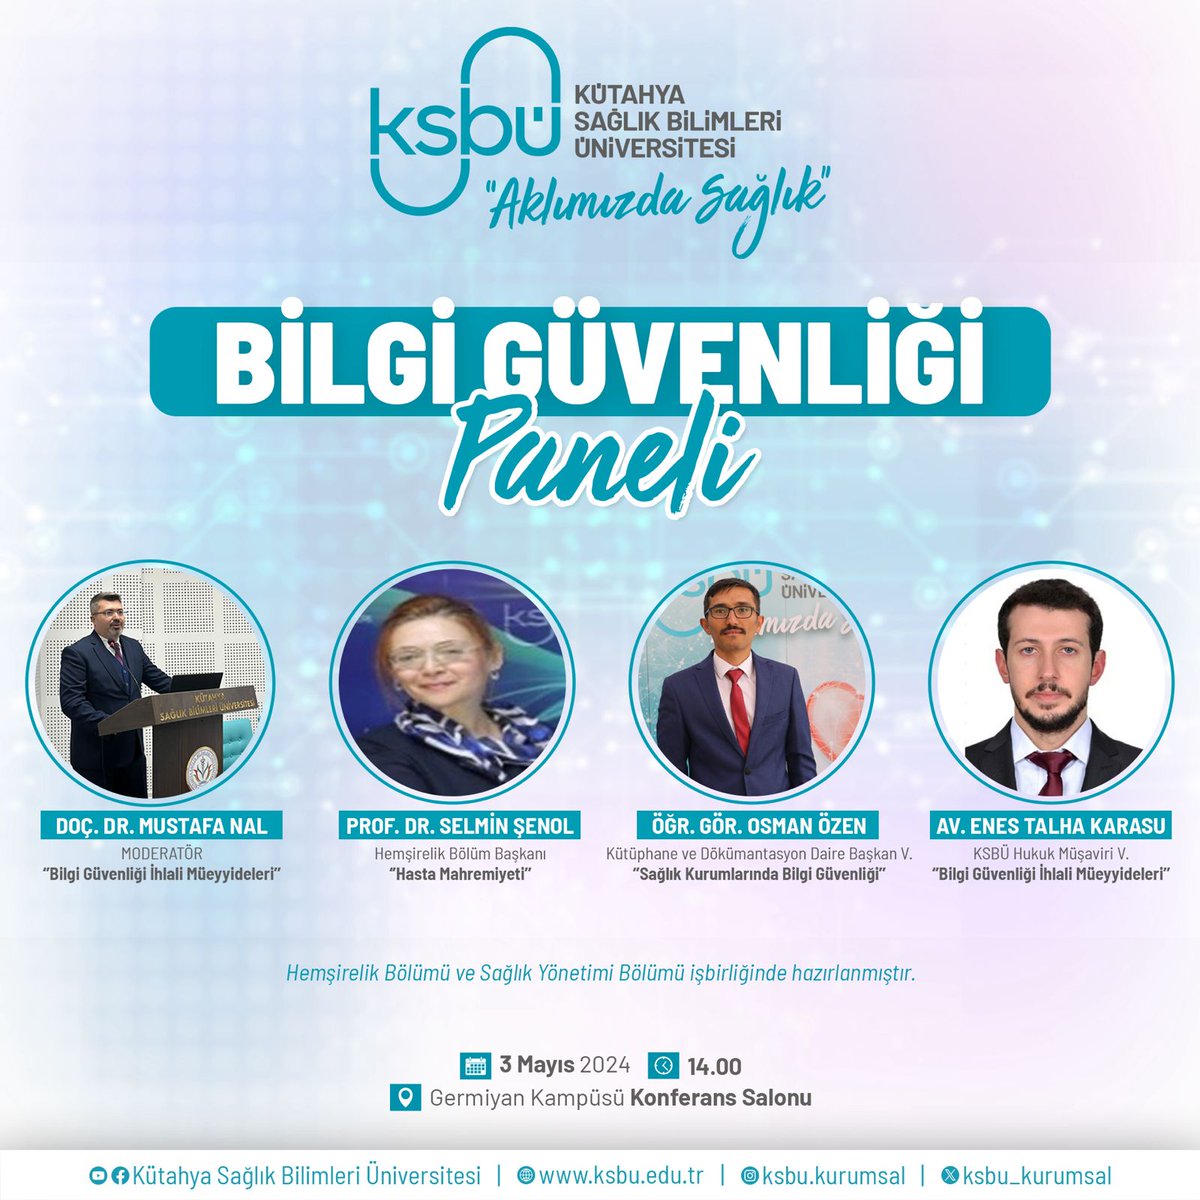 Kütahya Sağlık Bilimleri Üniversitesi (@ksbu_kurumsal) on Twitter photo 2024-05-02 12:14:10